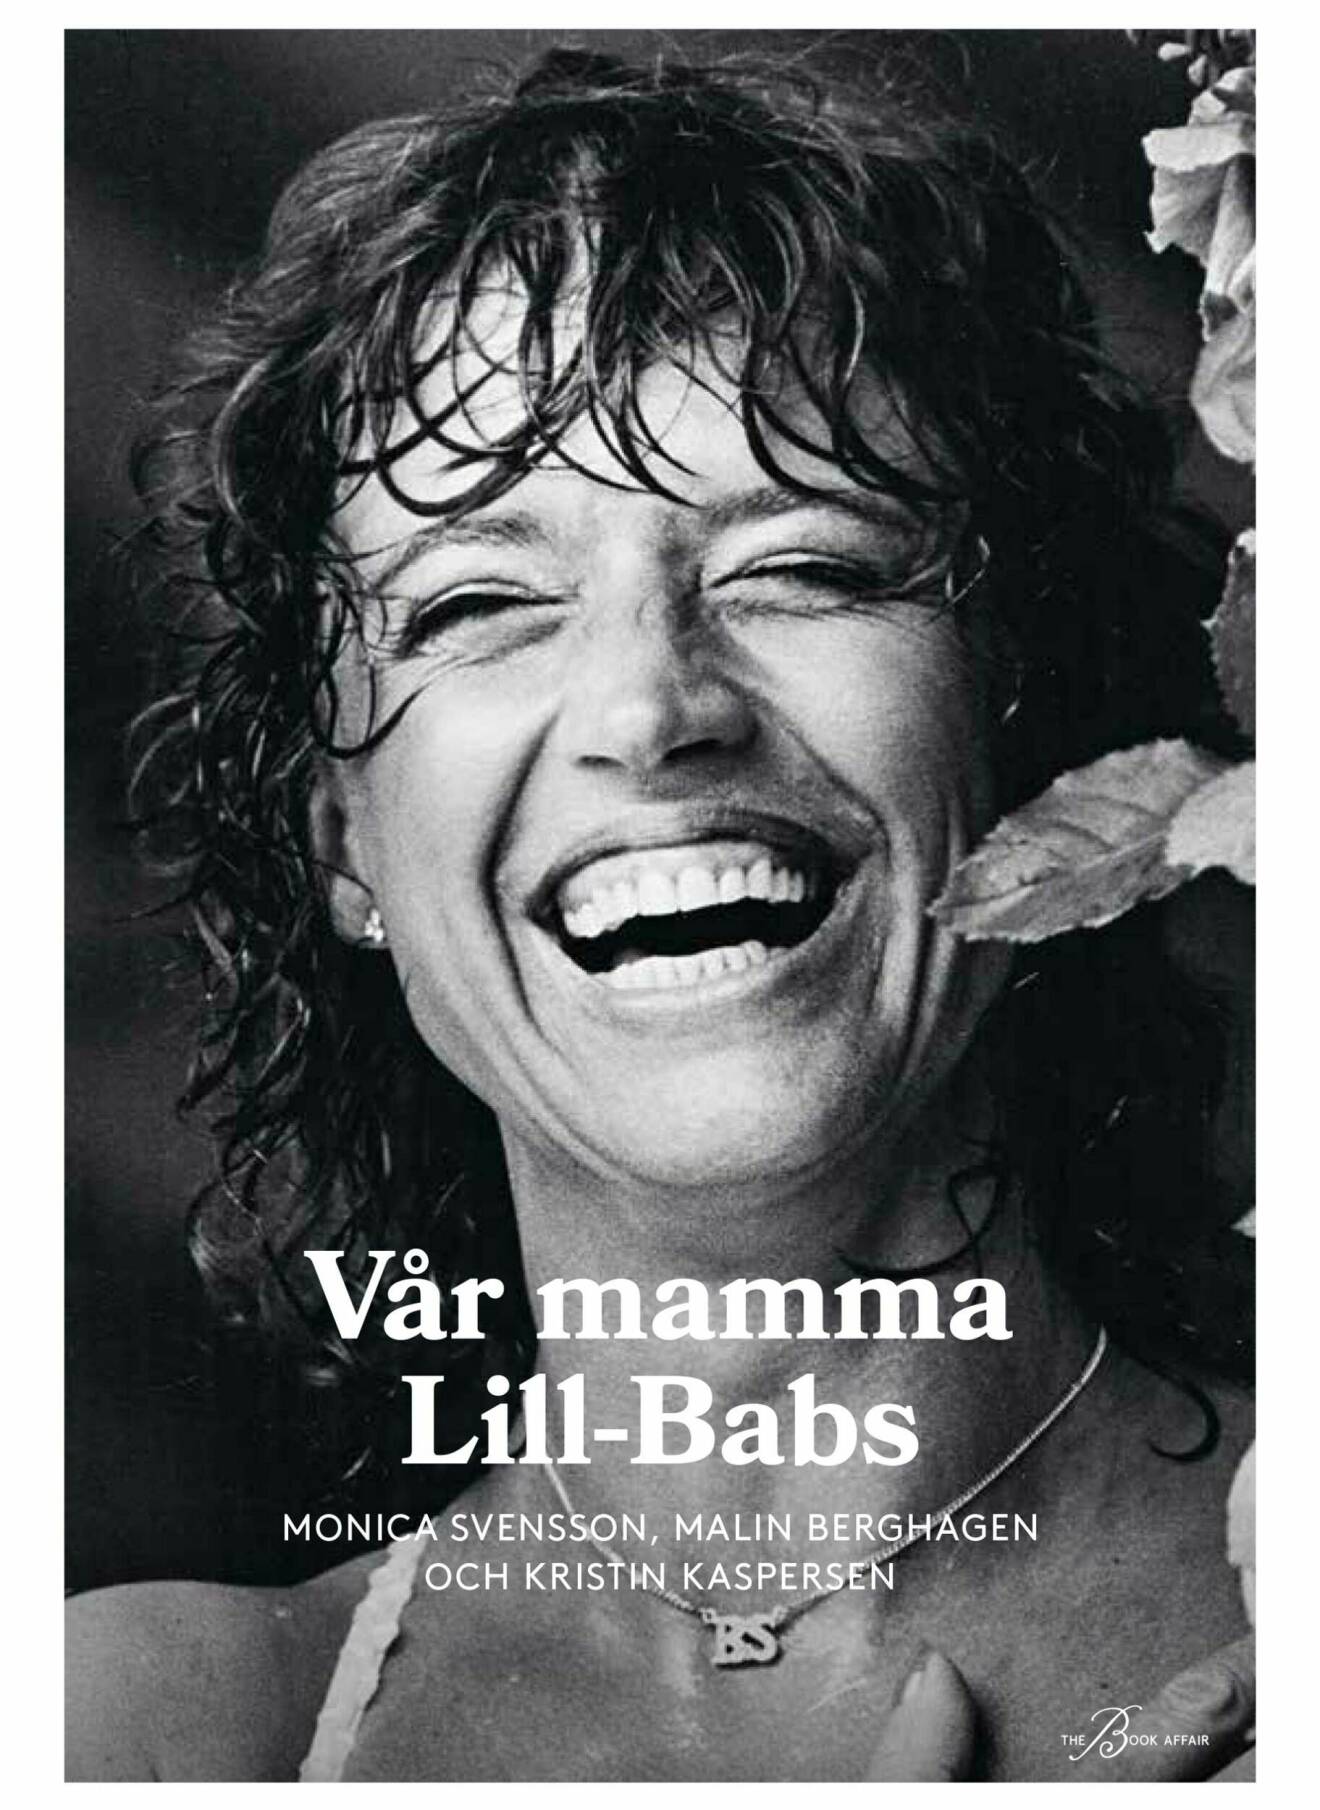 Vår mamma Lill-Babs av Monica Svensson, Malin Berghagen och Kristina Kaspersen.